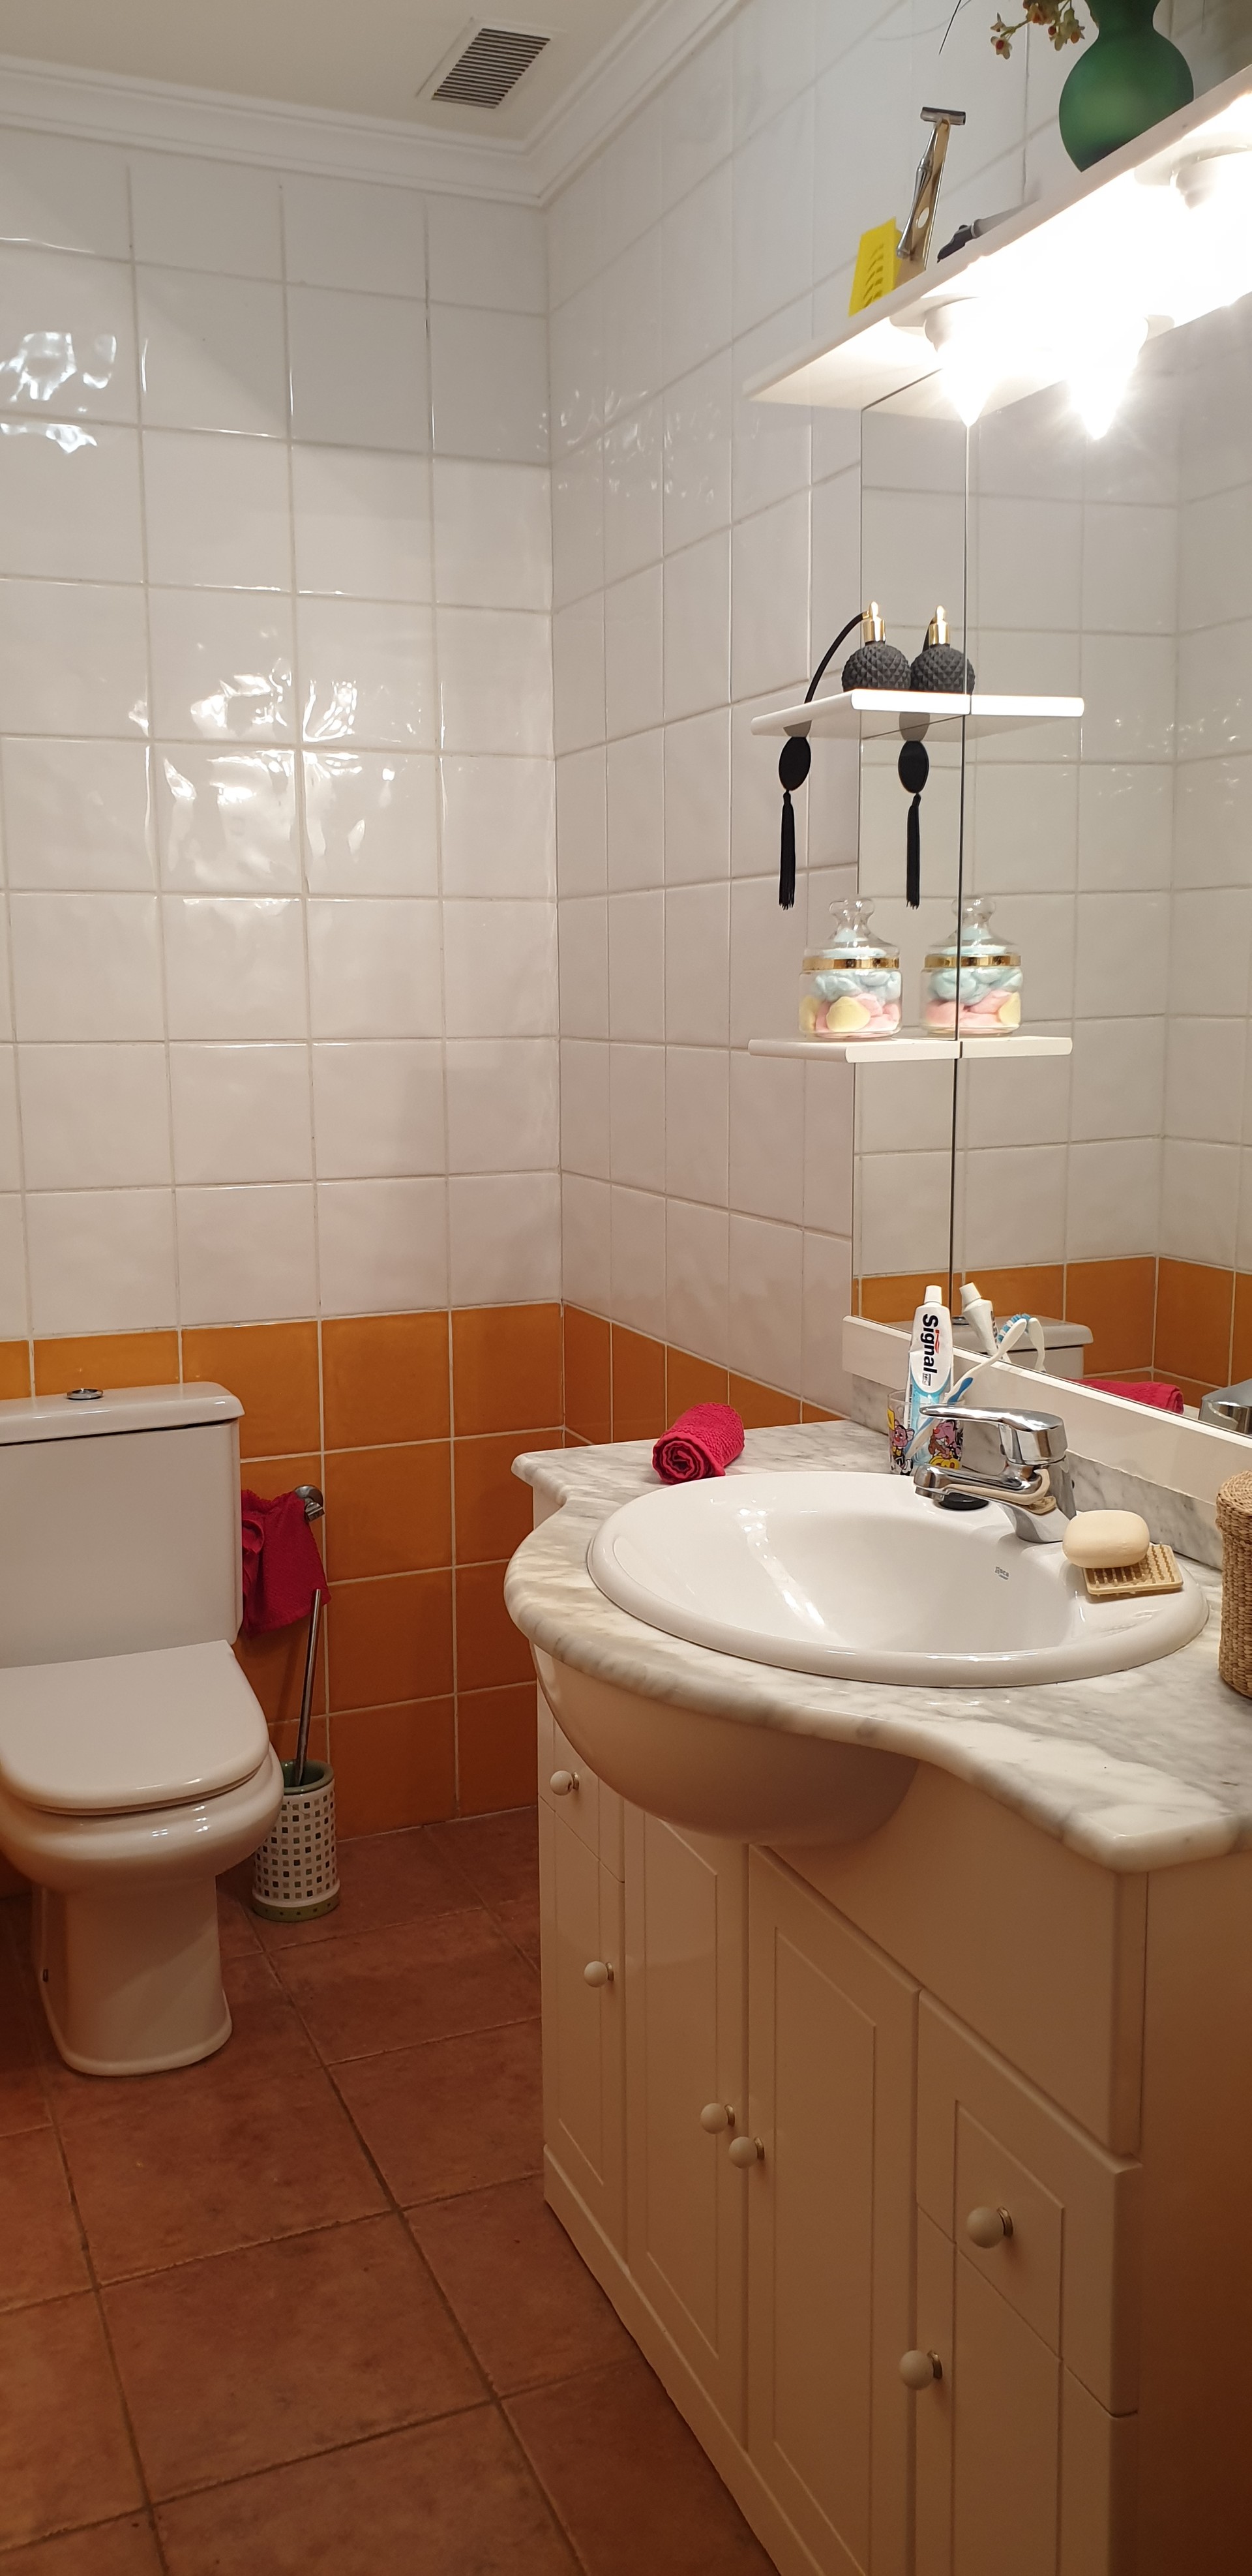 Room For Rent In 5 Bedroom House In Las Palmas De Gran Canaria With Internet